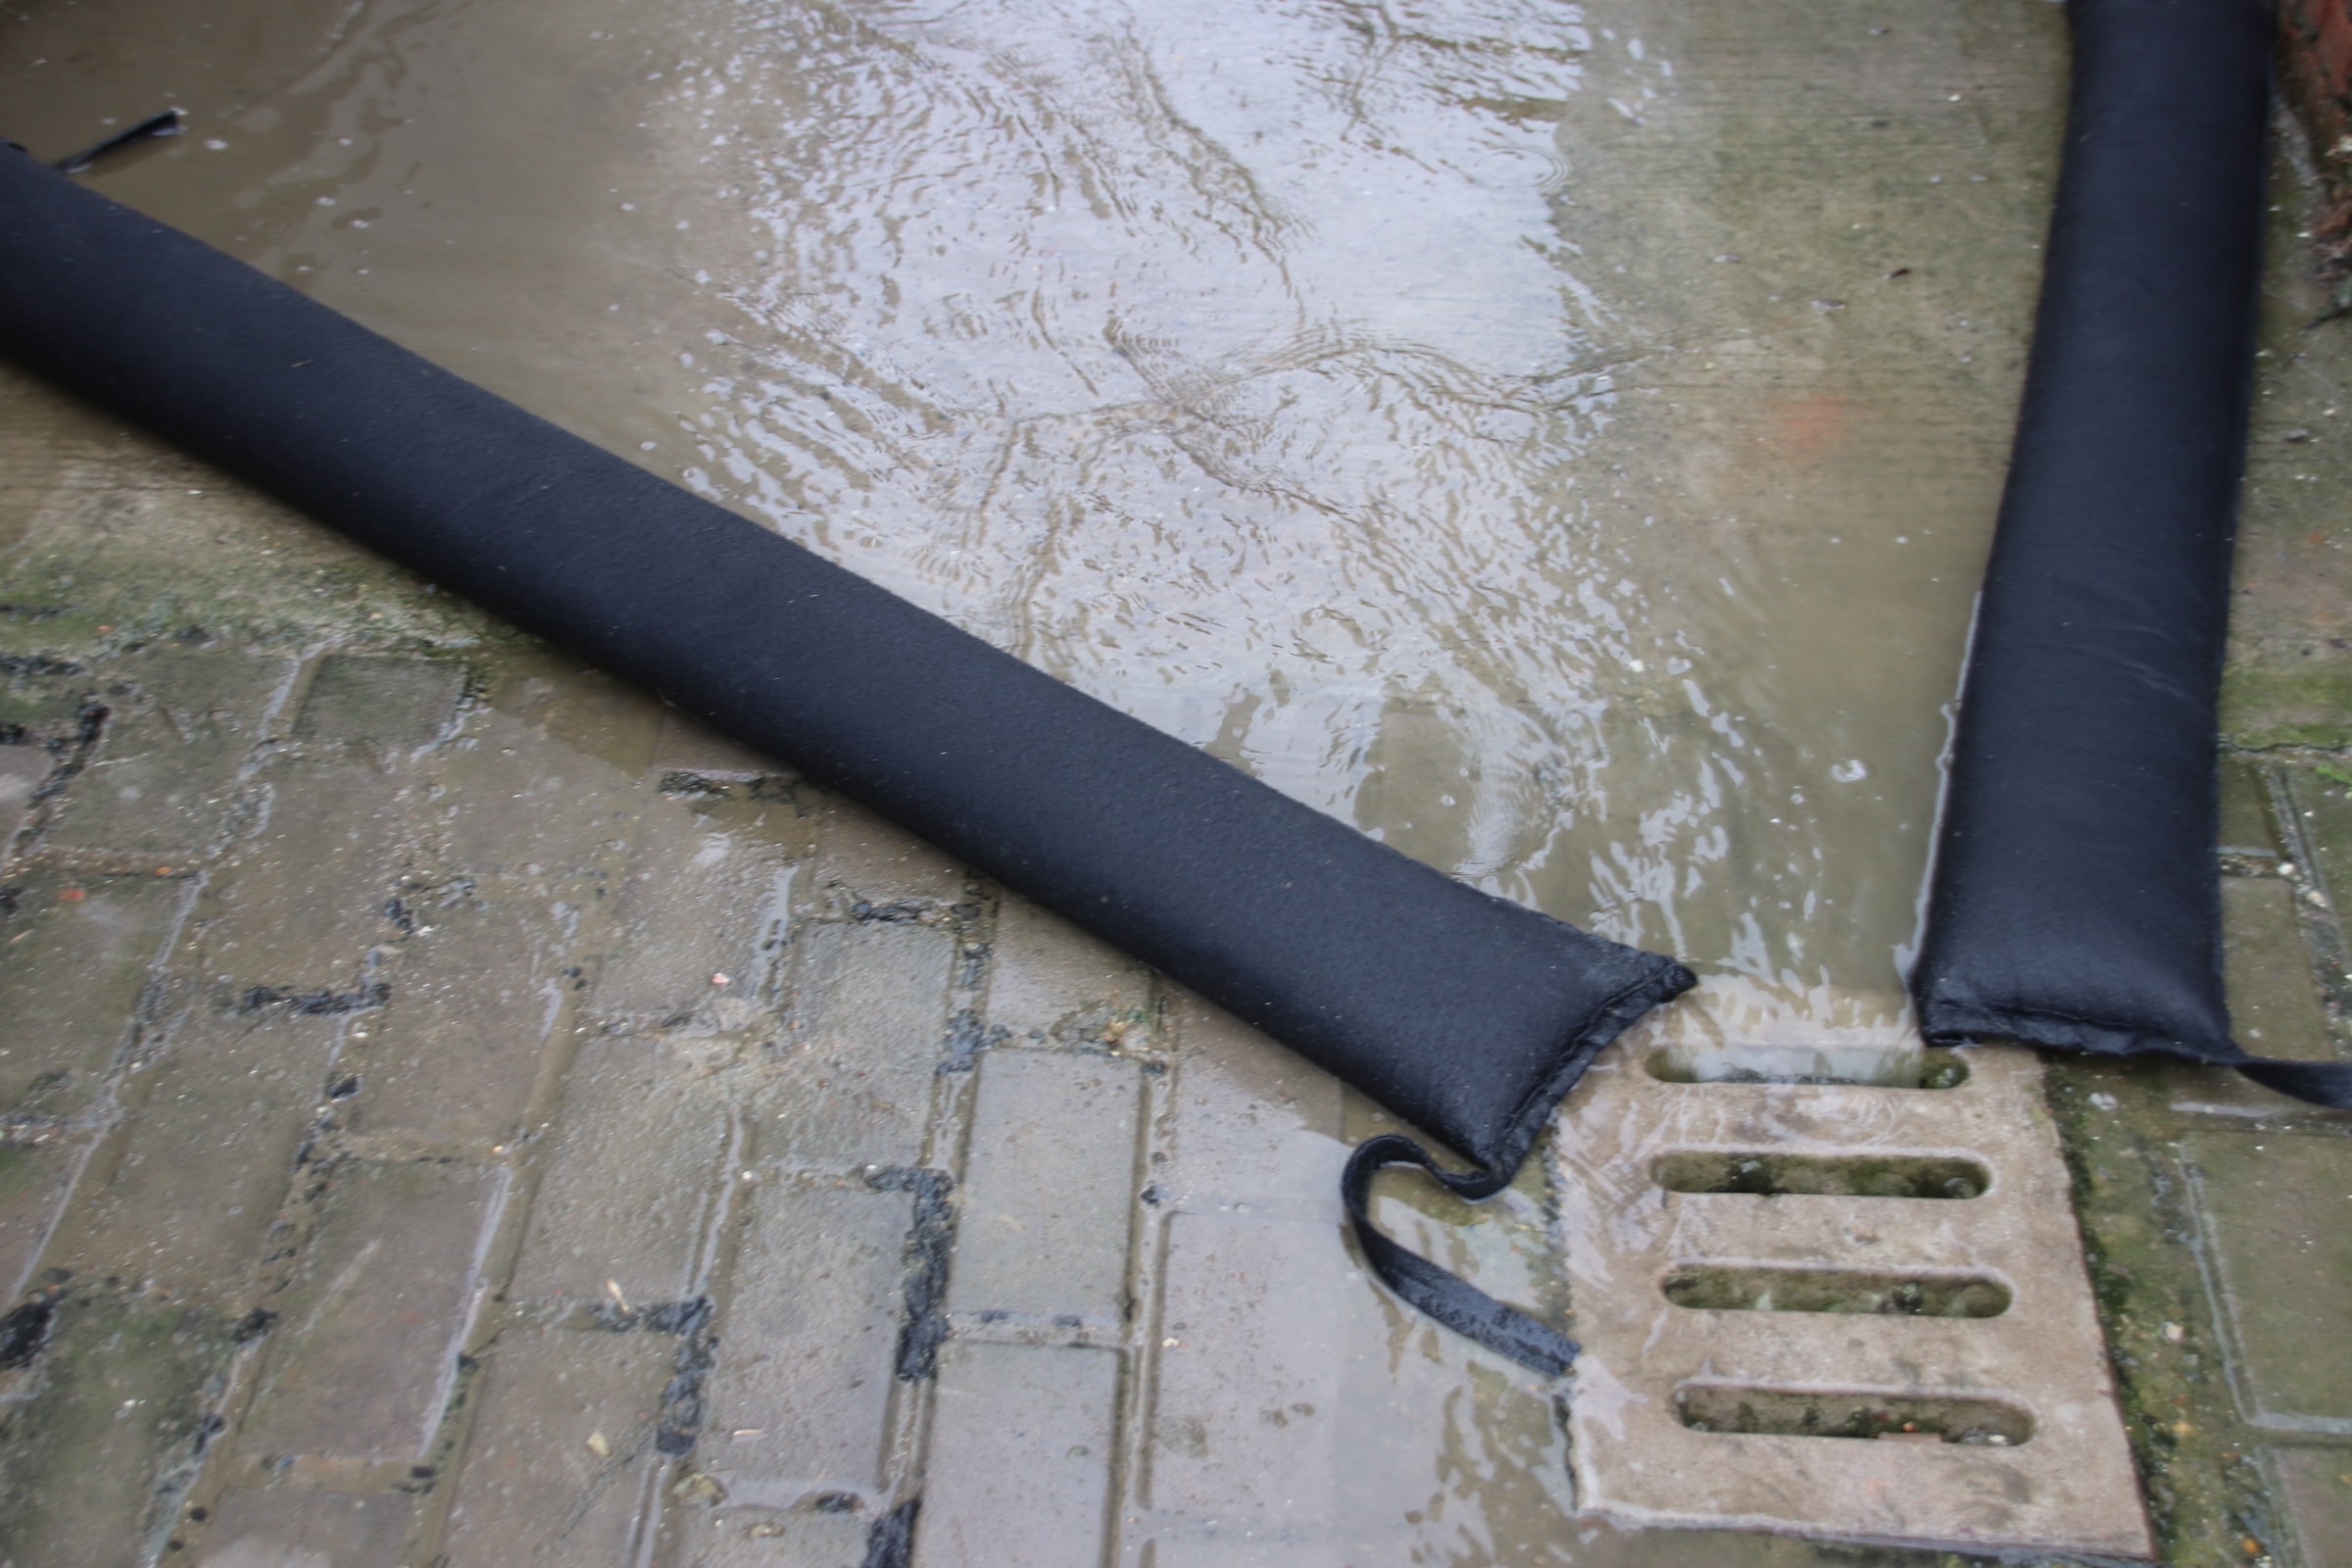 Barrière anti-inondation en kit 140cm - AQUASTOP - Mr.Bricolage